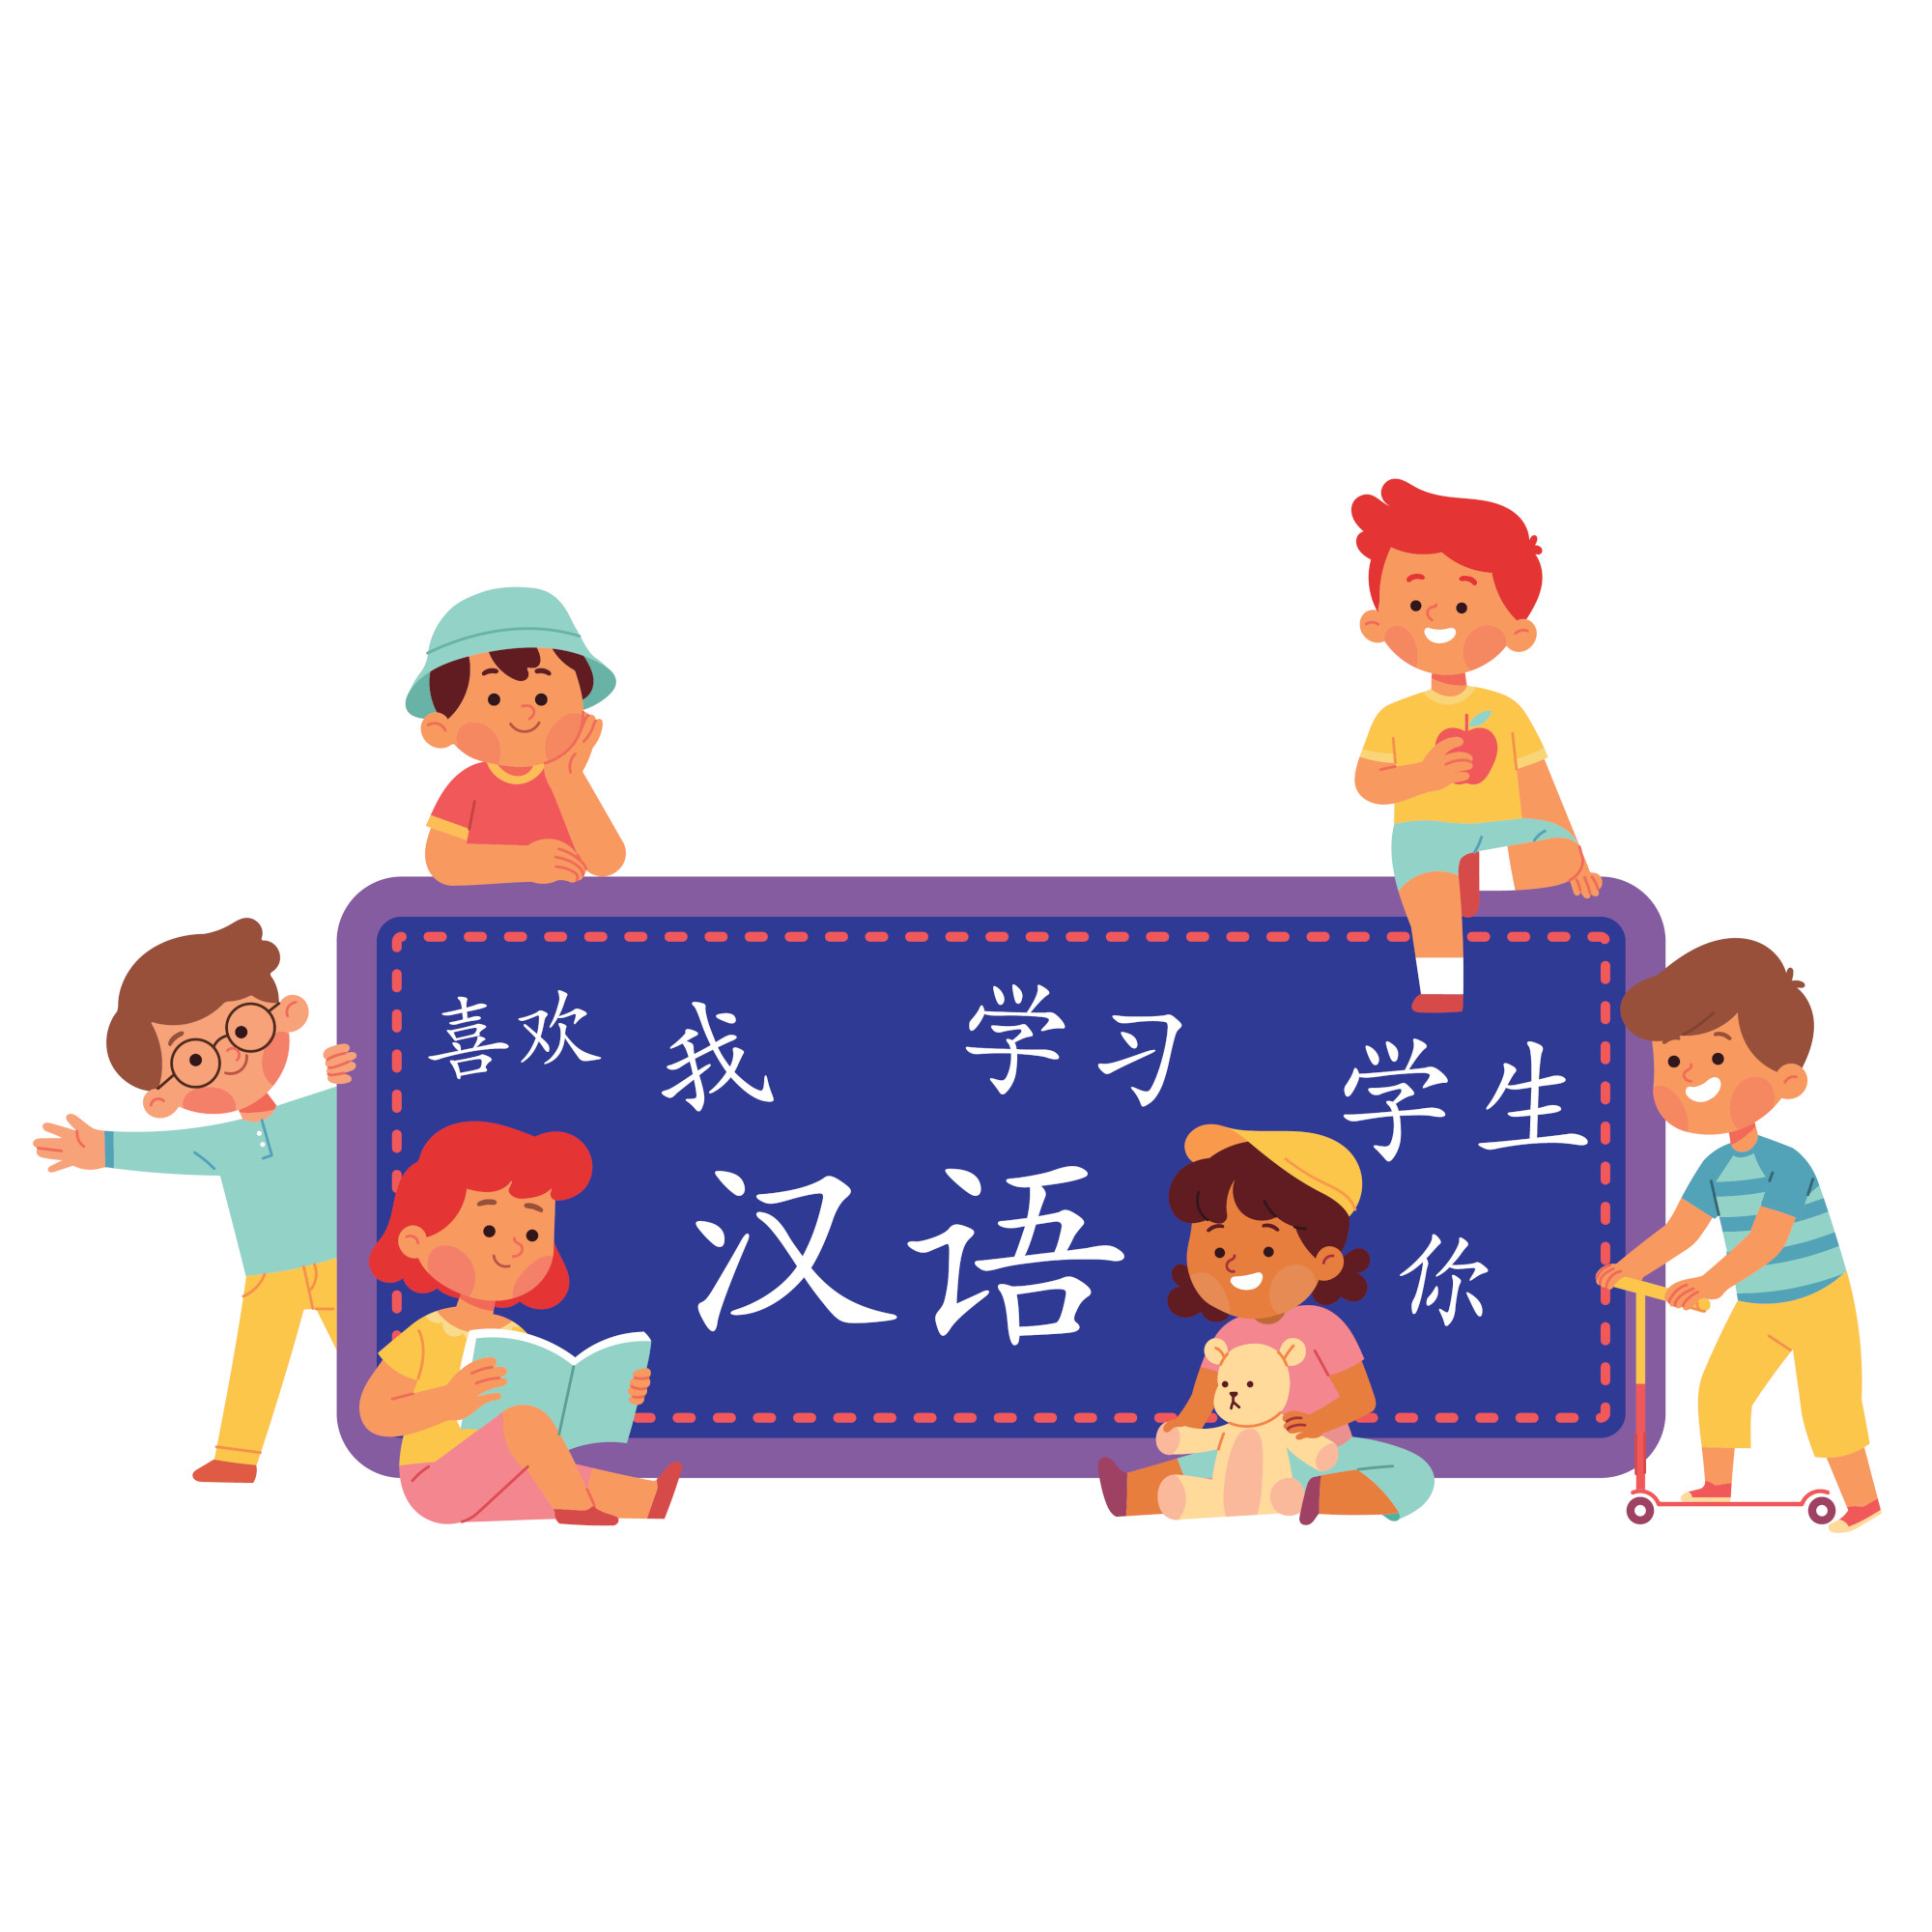 panggilan kepada anak dalam bahasa Mandarin - dasar mempelajari bahasa mandarin